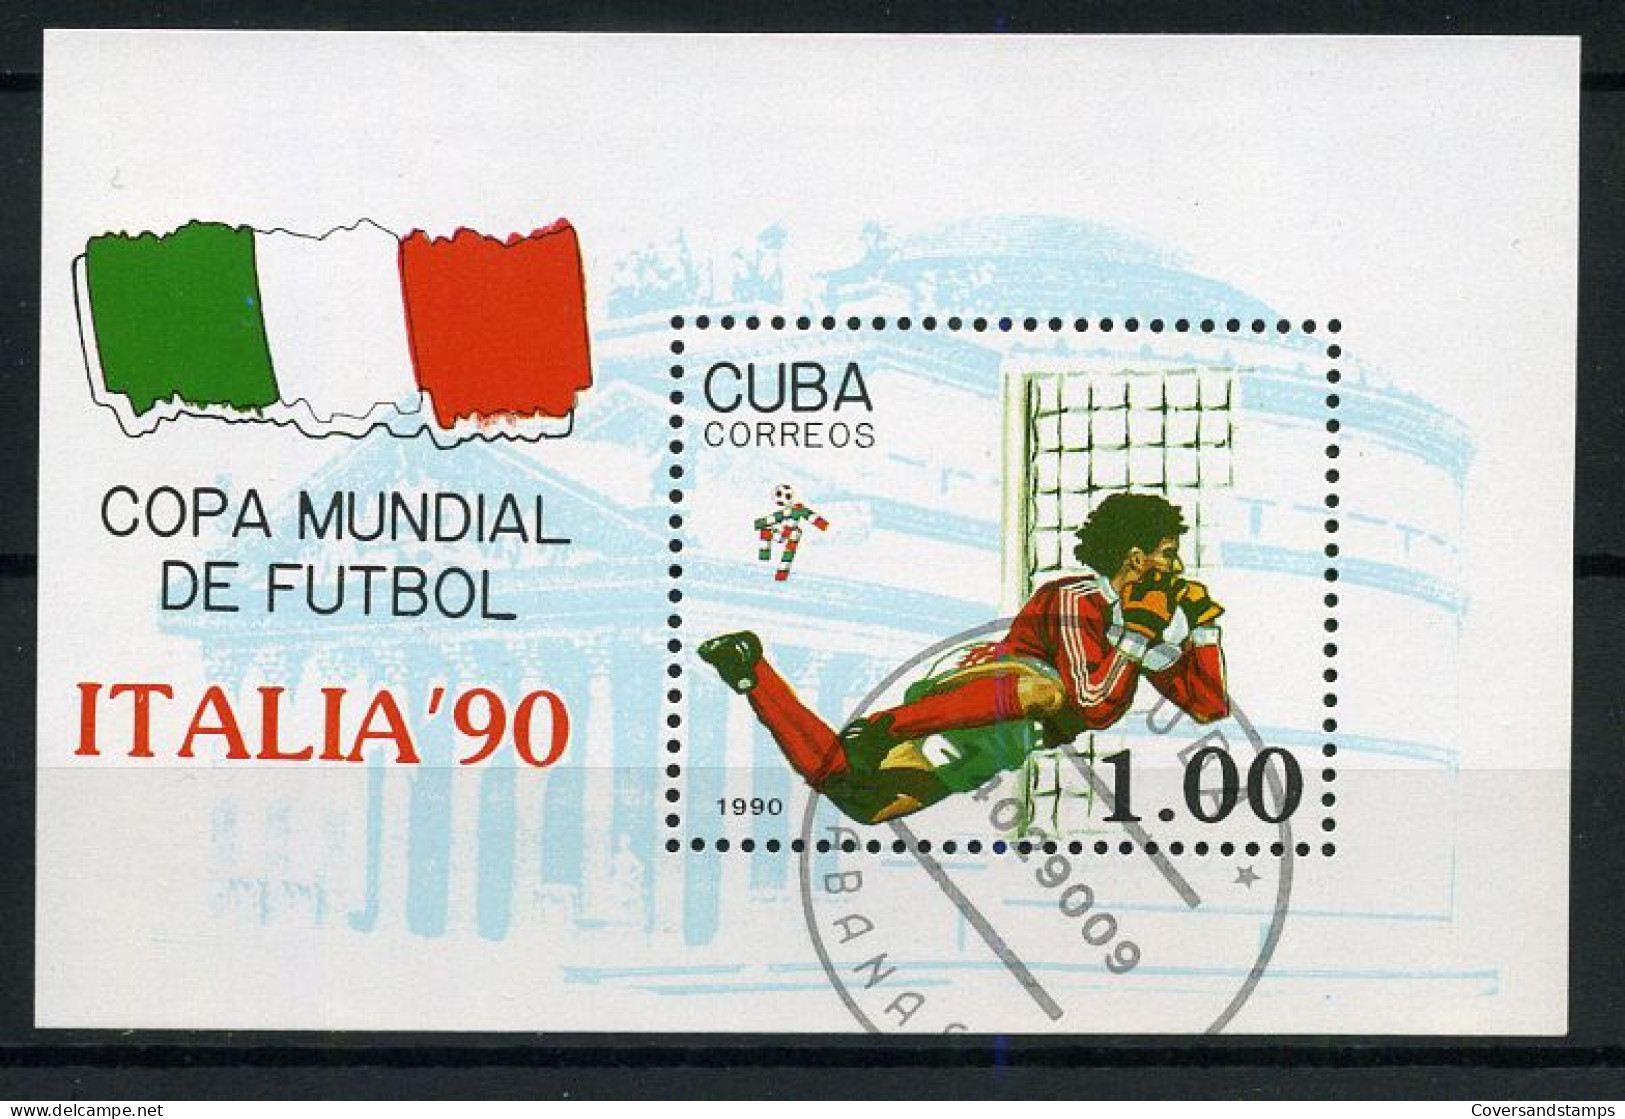 Cuba - Copa Mundial De Futbol, Italia '90 - 1990 – Italie